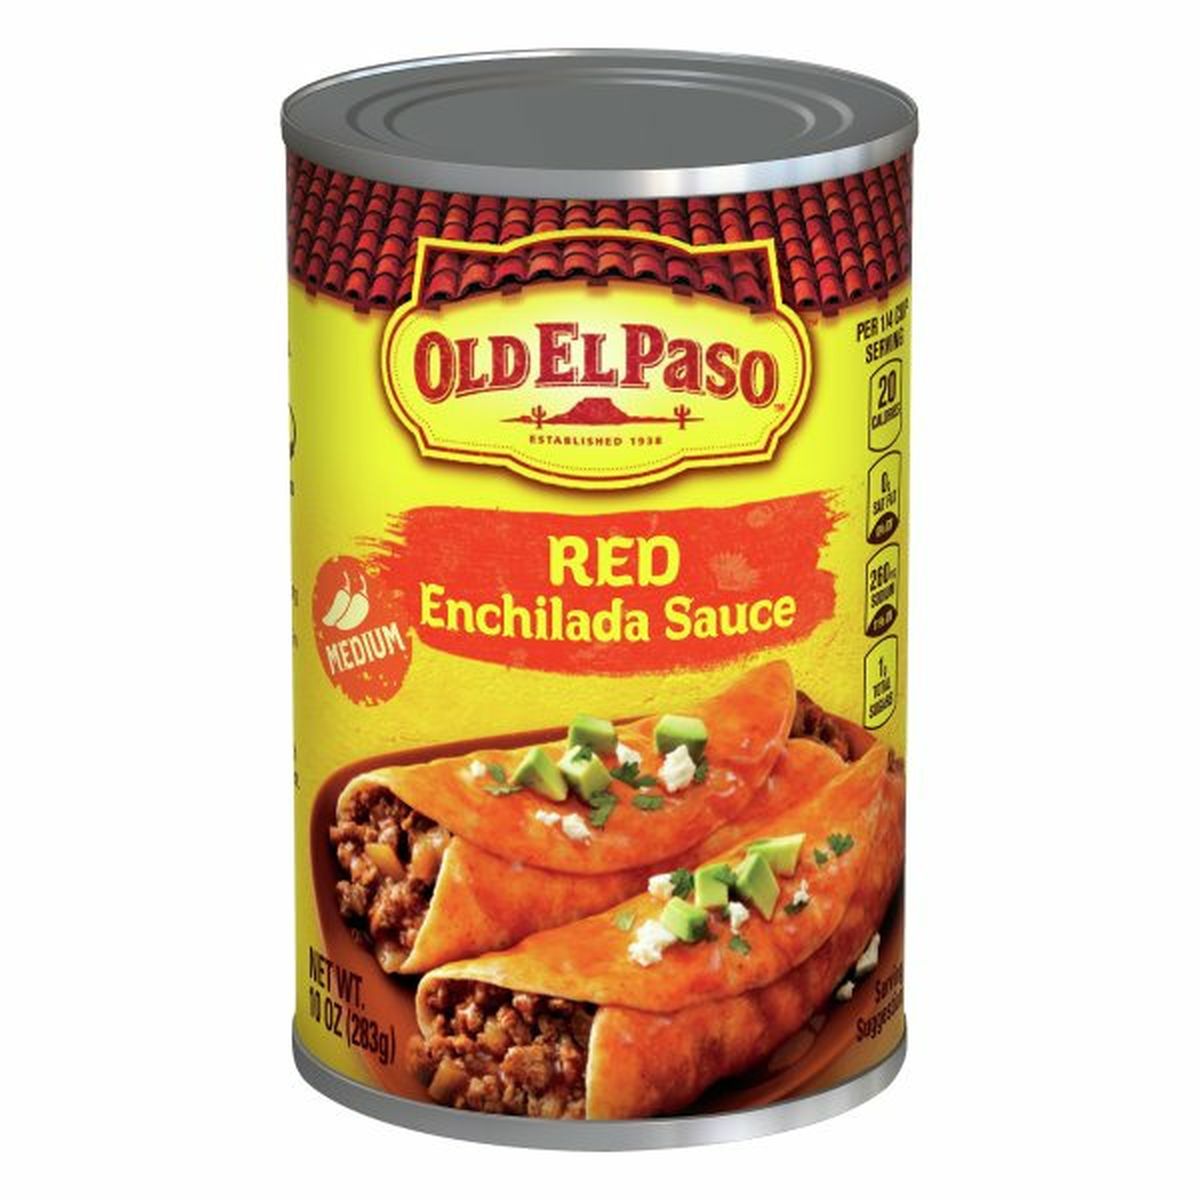 Calories in Old El Paso Enchilada Sauce, Medium, Red